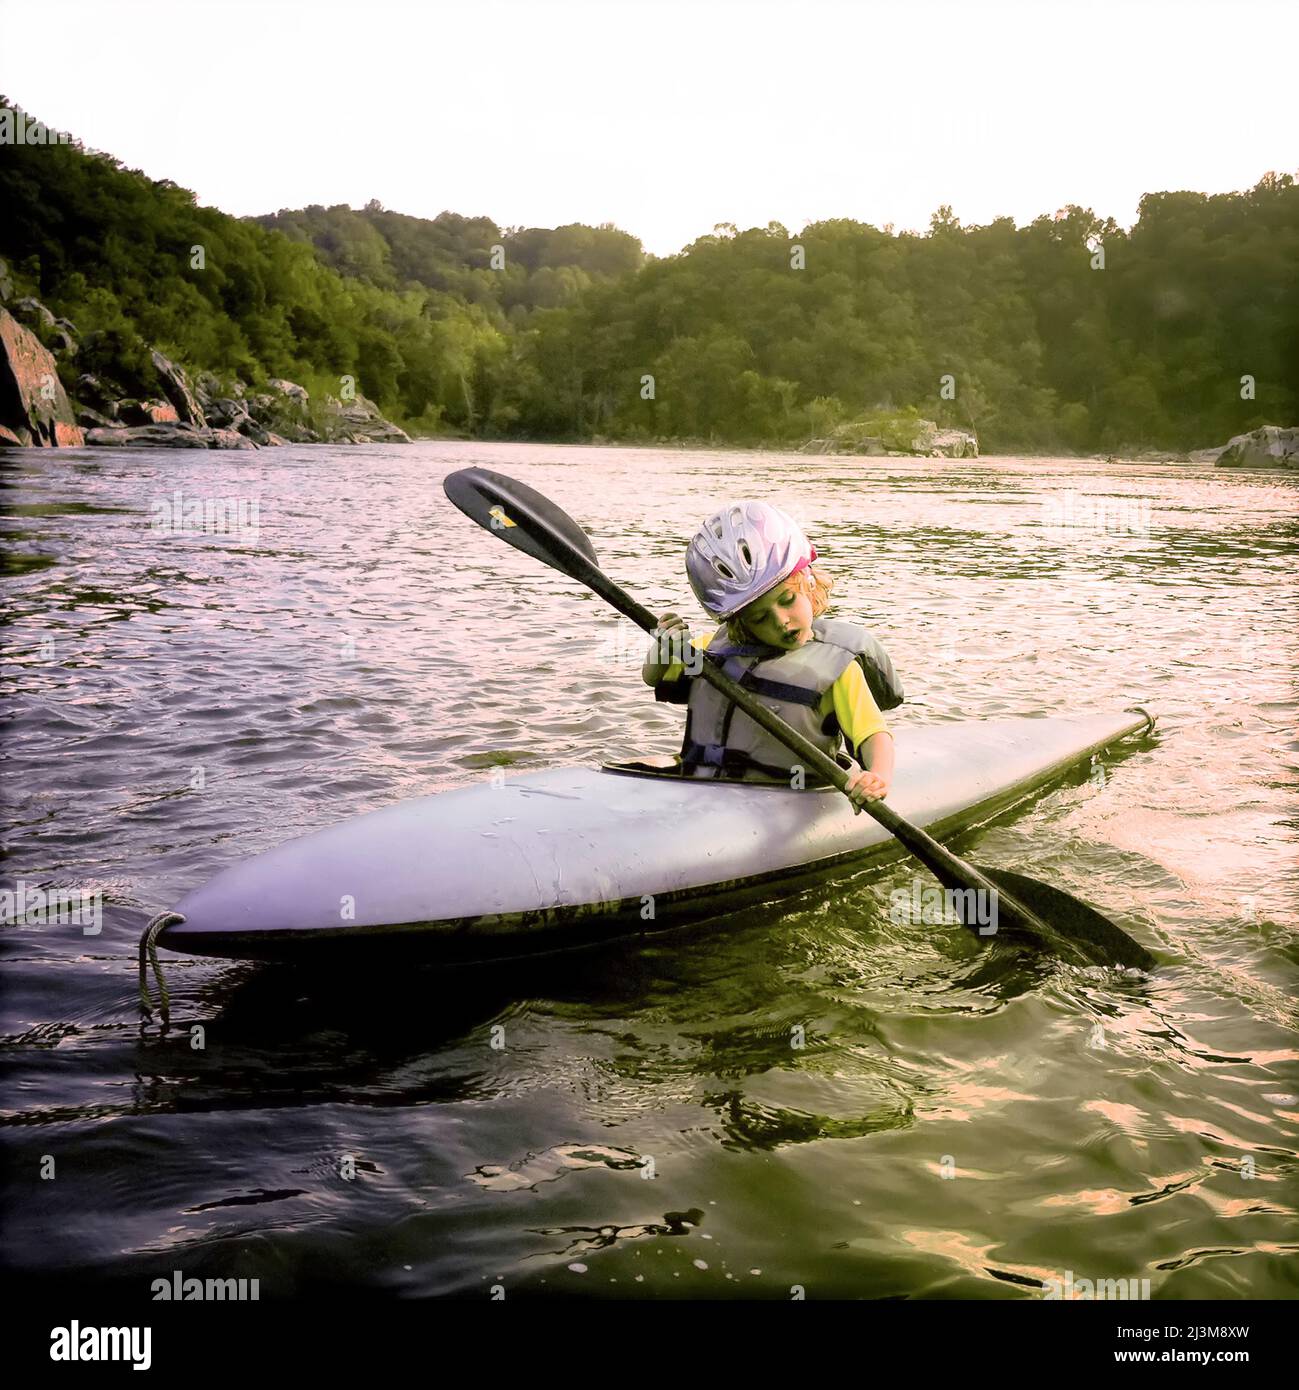 Une jeune fille de trois ans pagaie son kayak sur le fleuve Potomac.; Potomac, Maryland. Banque D'Images